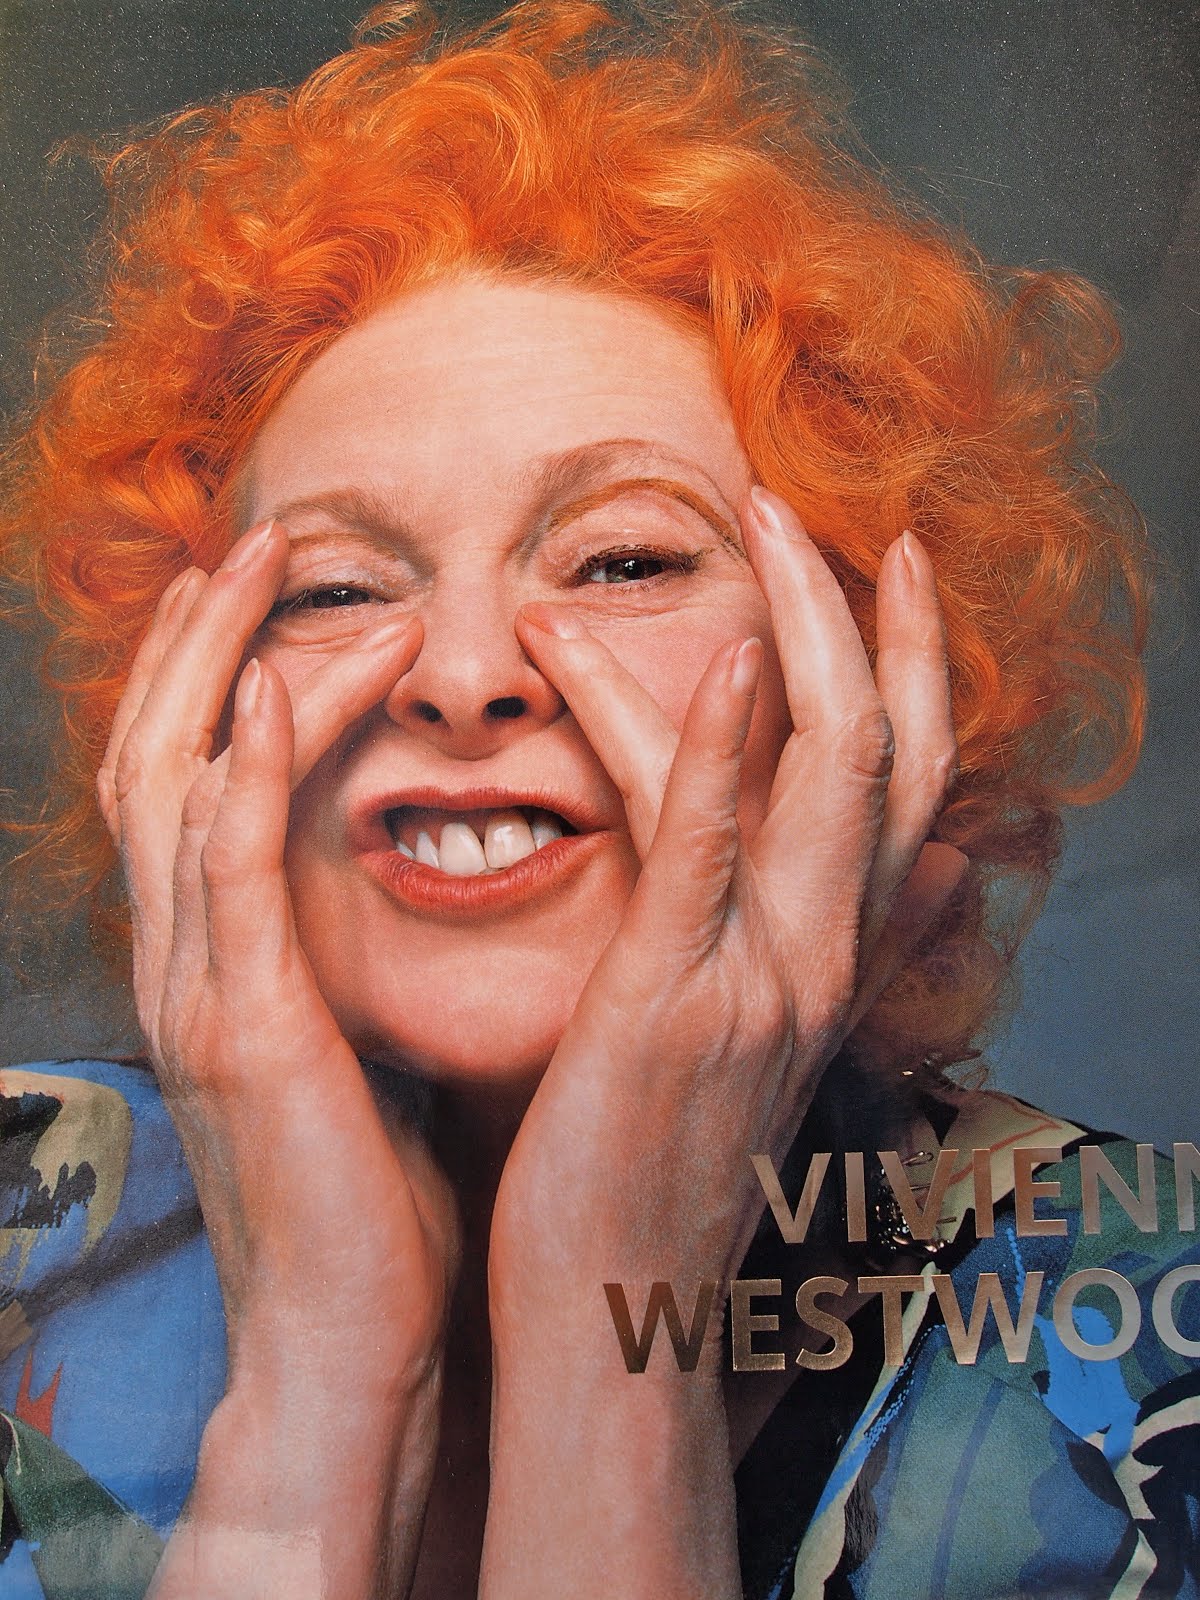 Thingummery: Vivienne Westwood is so rad.